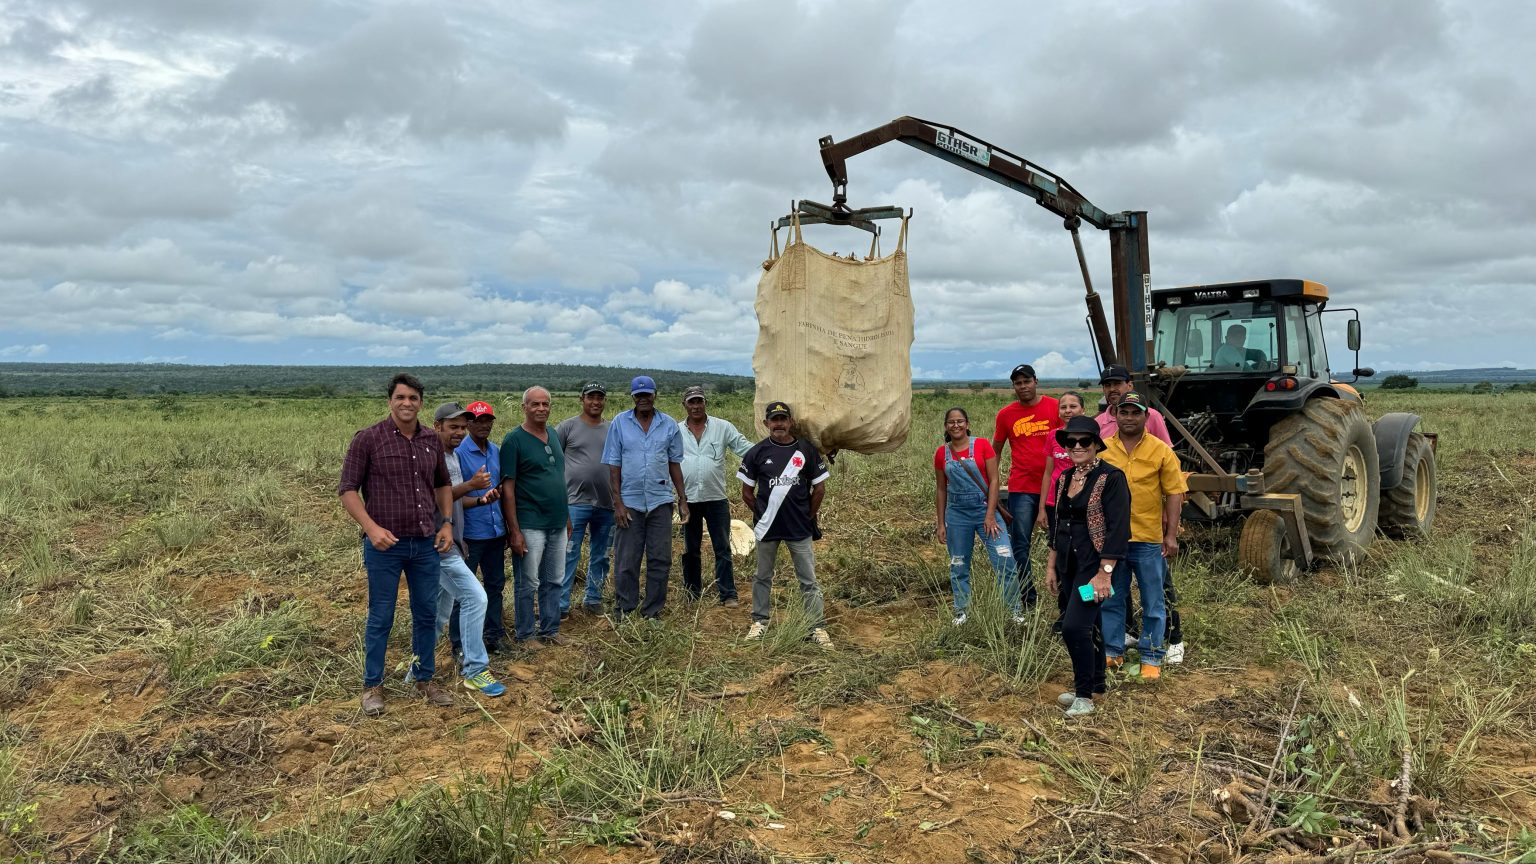 Novas tecnologias impulsionam a produção agrícola em comunidade rural de Belo Campo